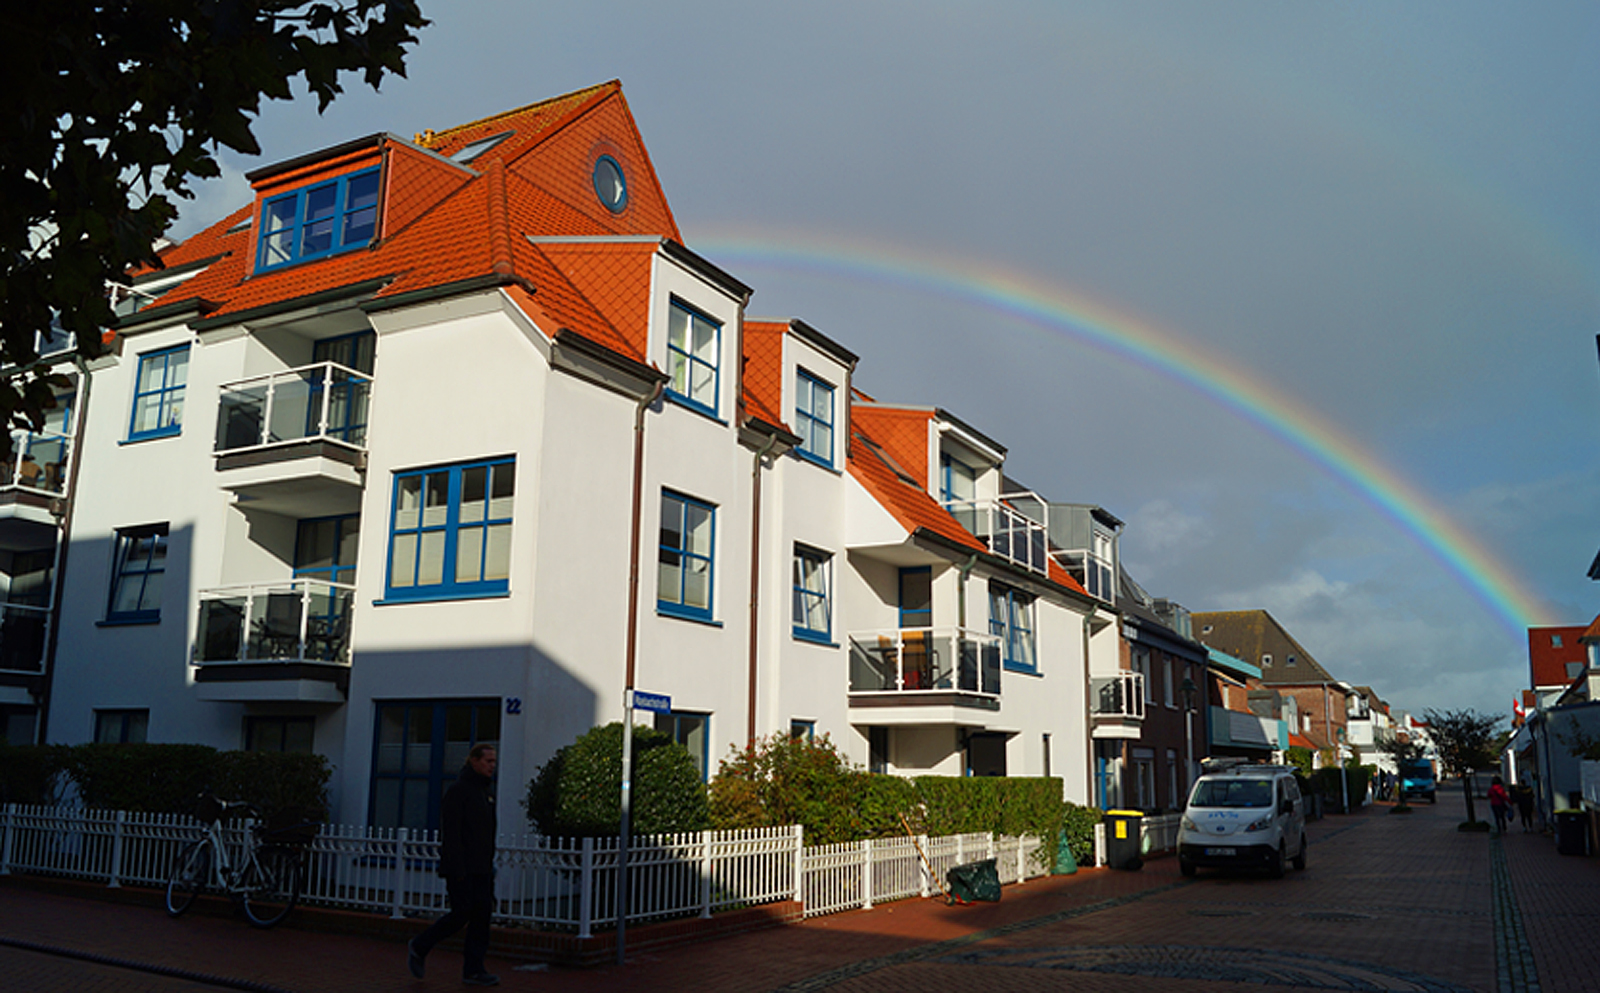 Regenbogen über Norderney